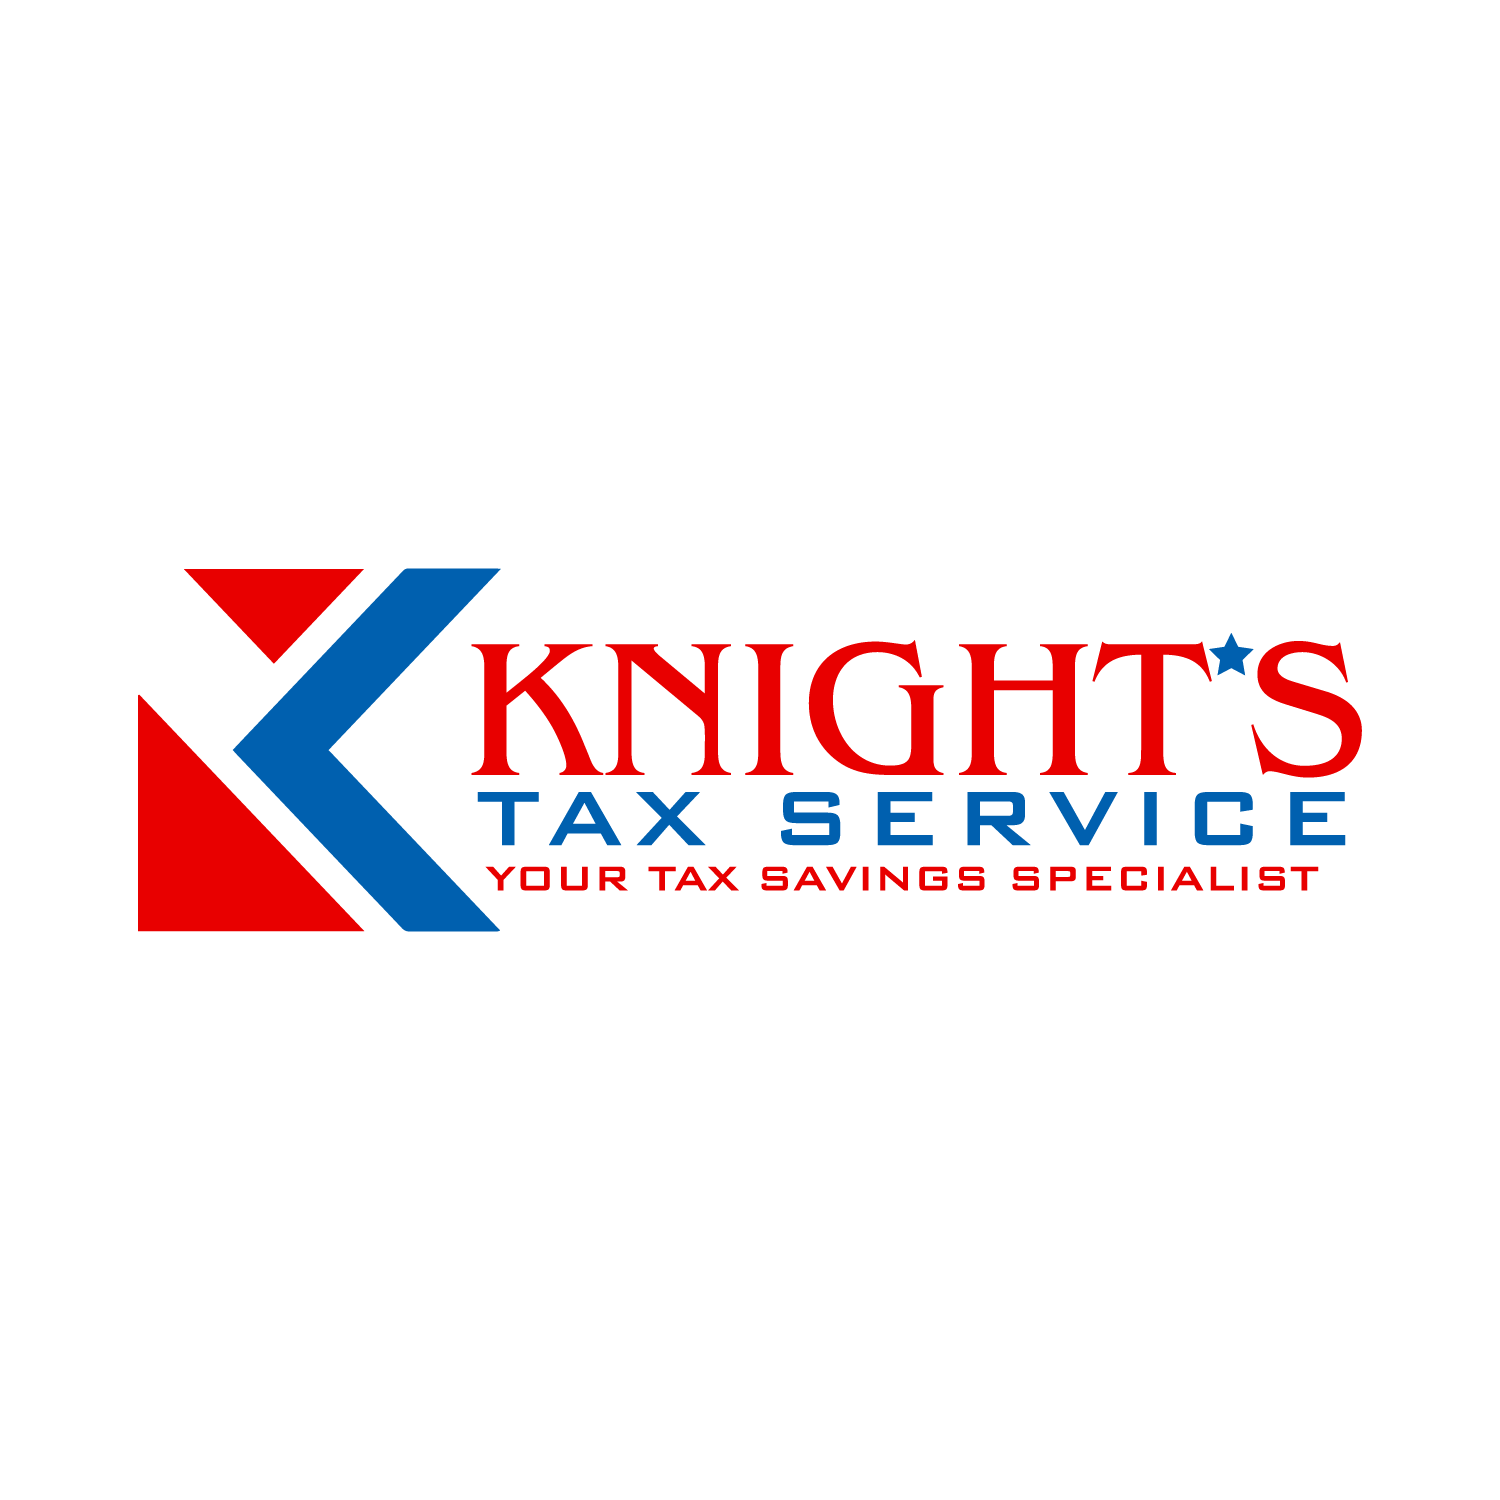 Knight's Tax Service 110 W Alabama St, Brazoria Texas 77422